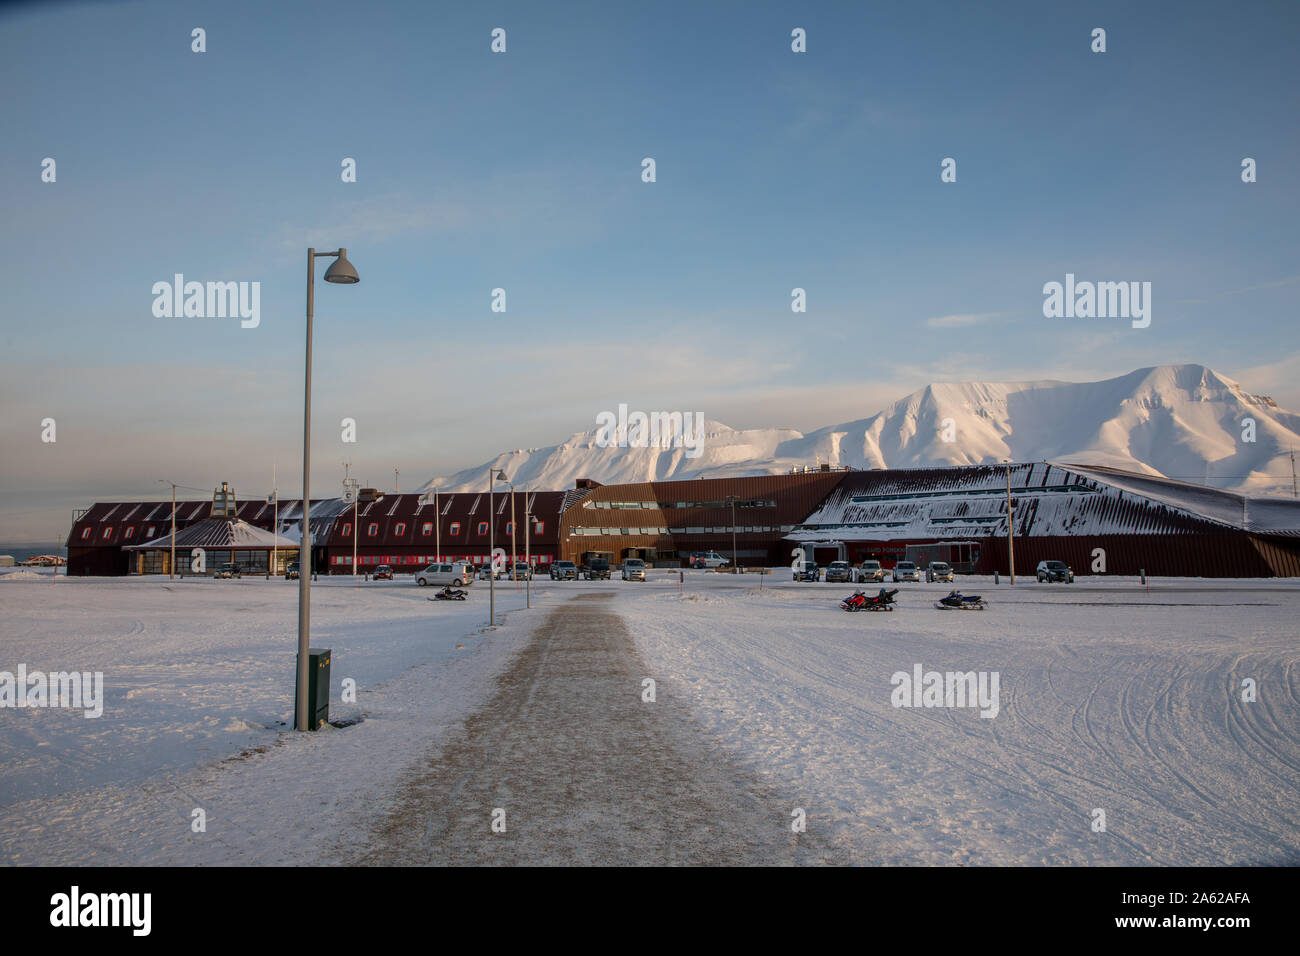 Longyearbyen, Svalbard en Norvège - Mars 2019 : Le Centre de l'université, Svalbard Science Center - Unis - et Musée de Svalbard. Situé à Longyearbyen. Banque D'Images